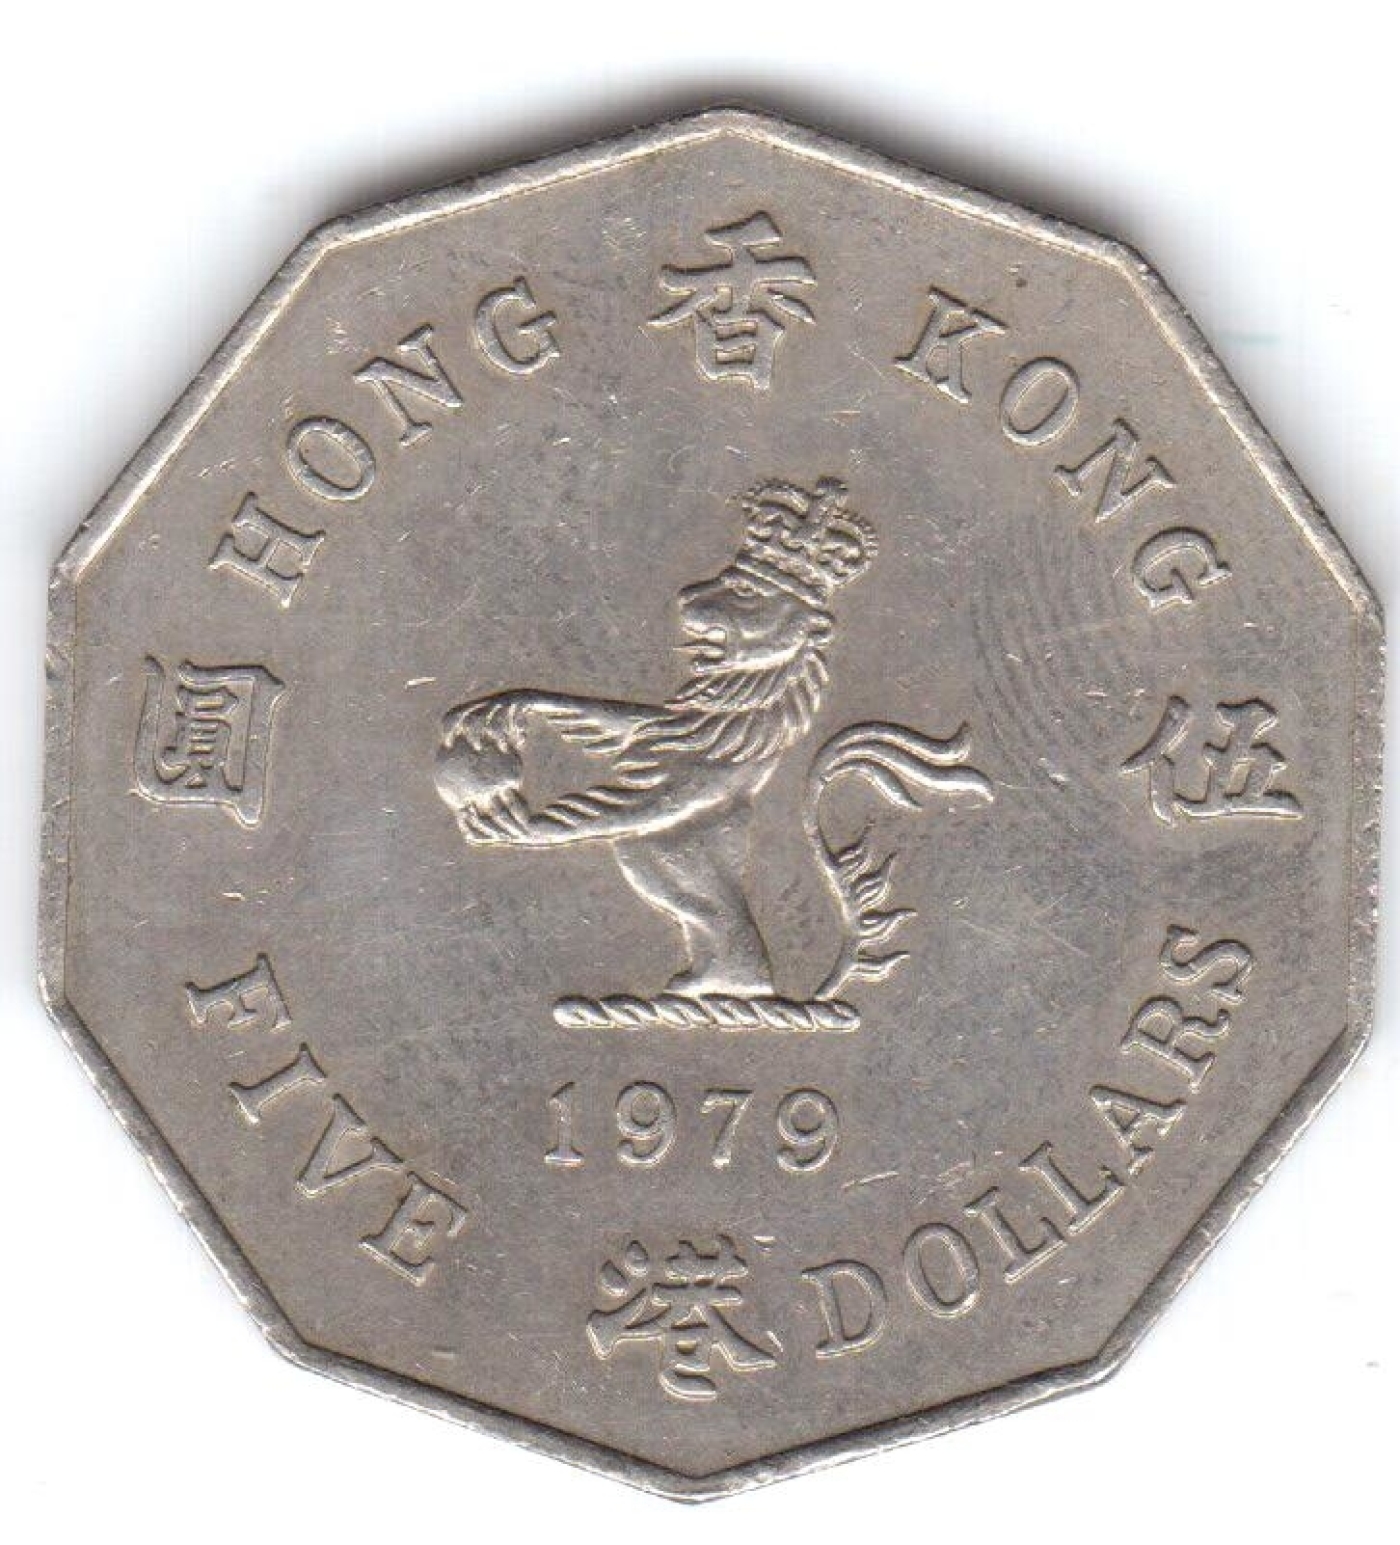 5 Dollars 1979, British Colony (1901-1980) - Hong Kong - Coin - 406891400 x 1545